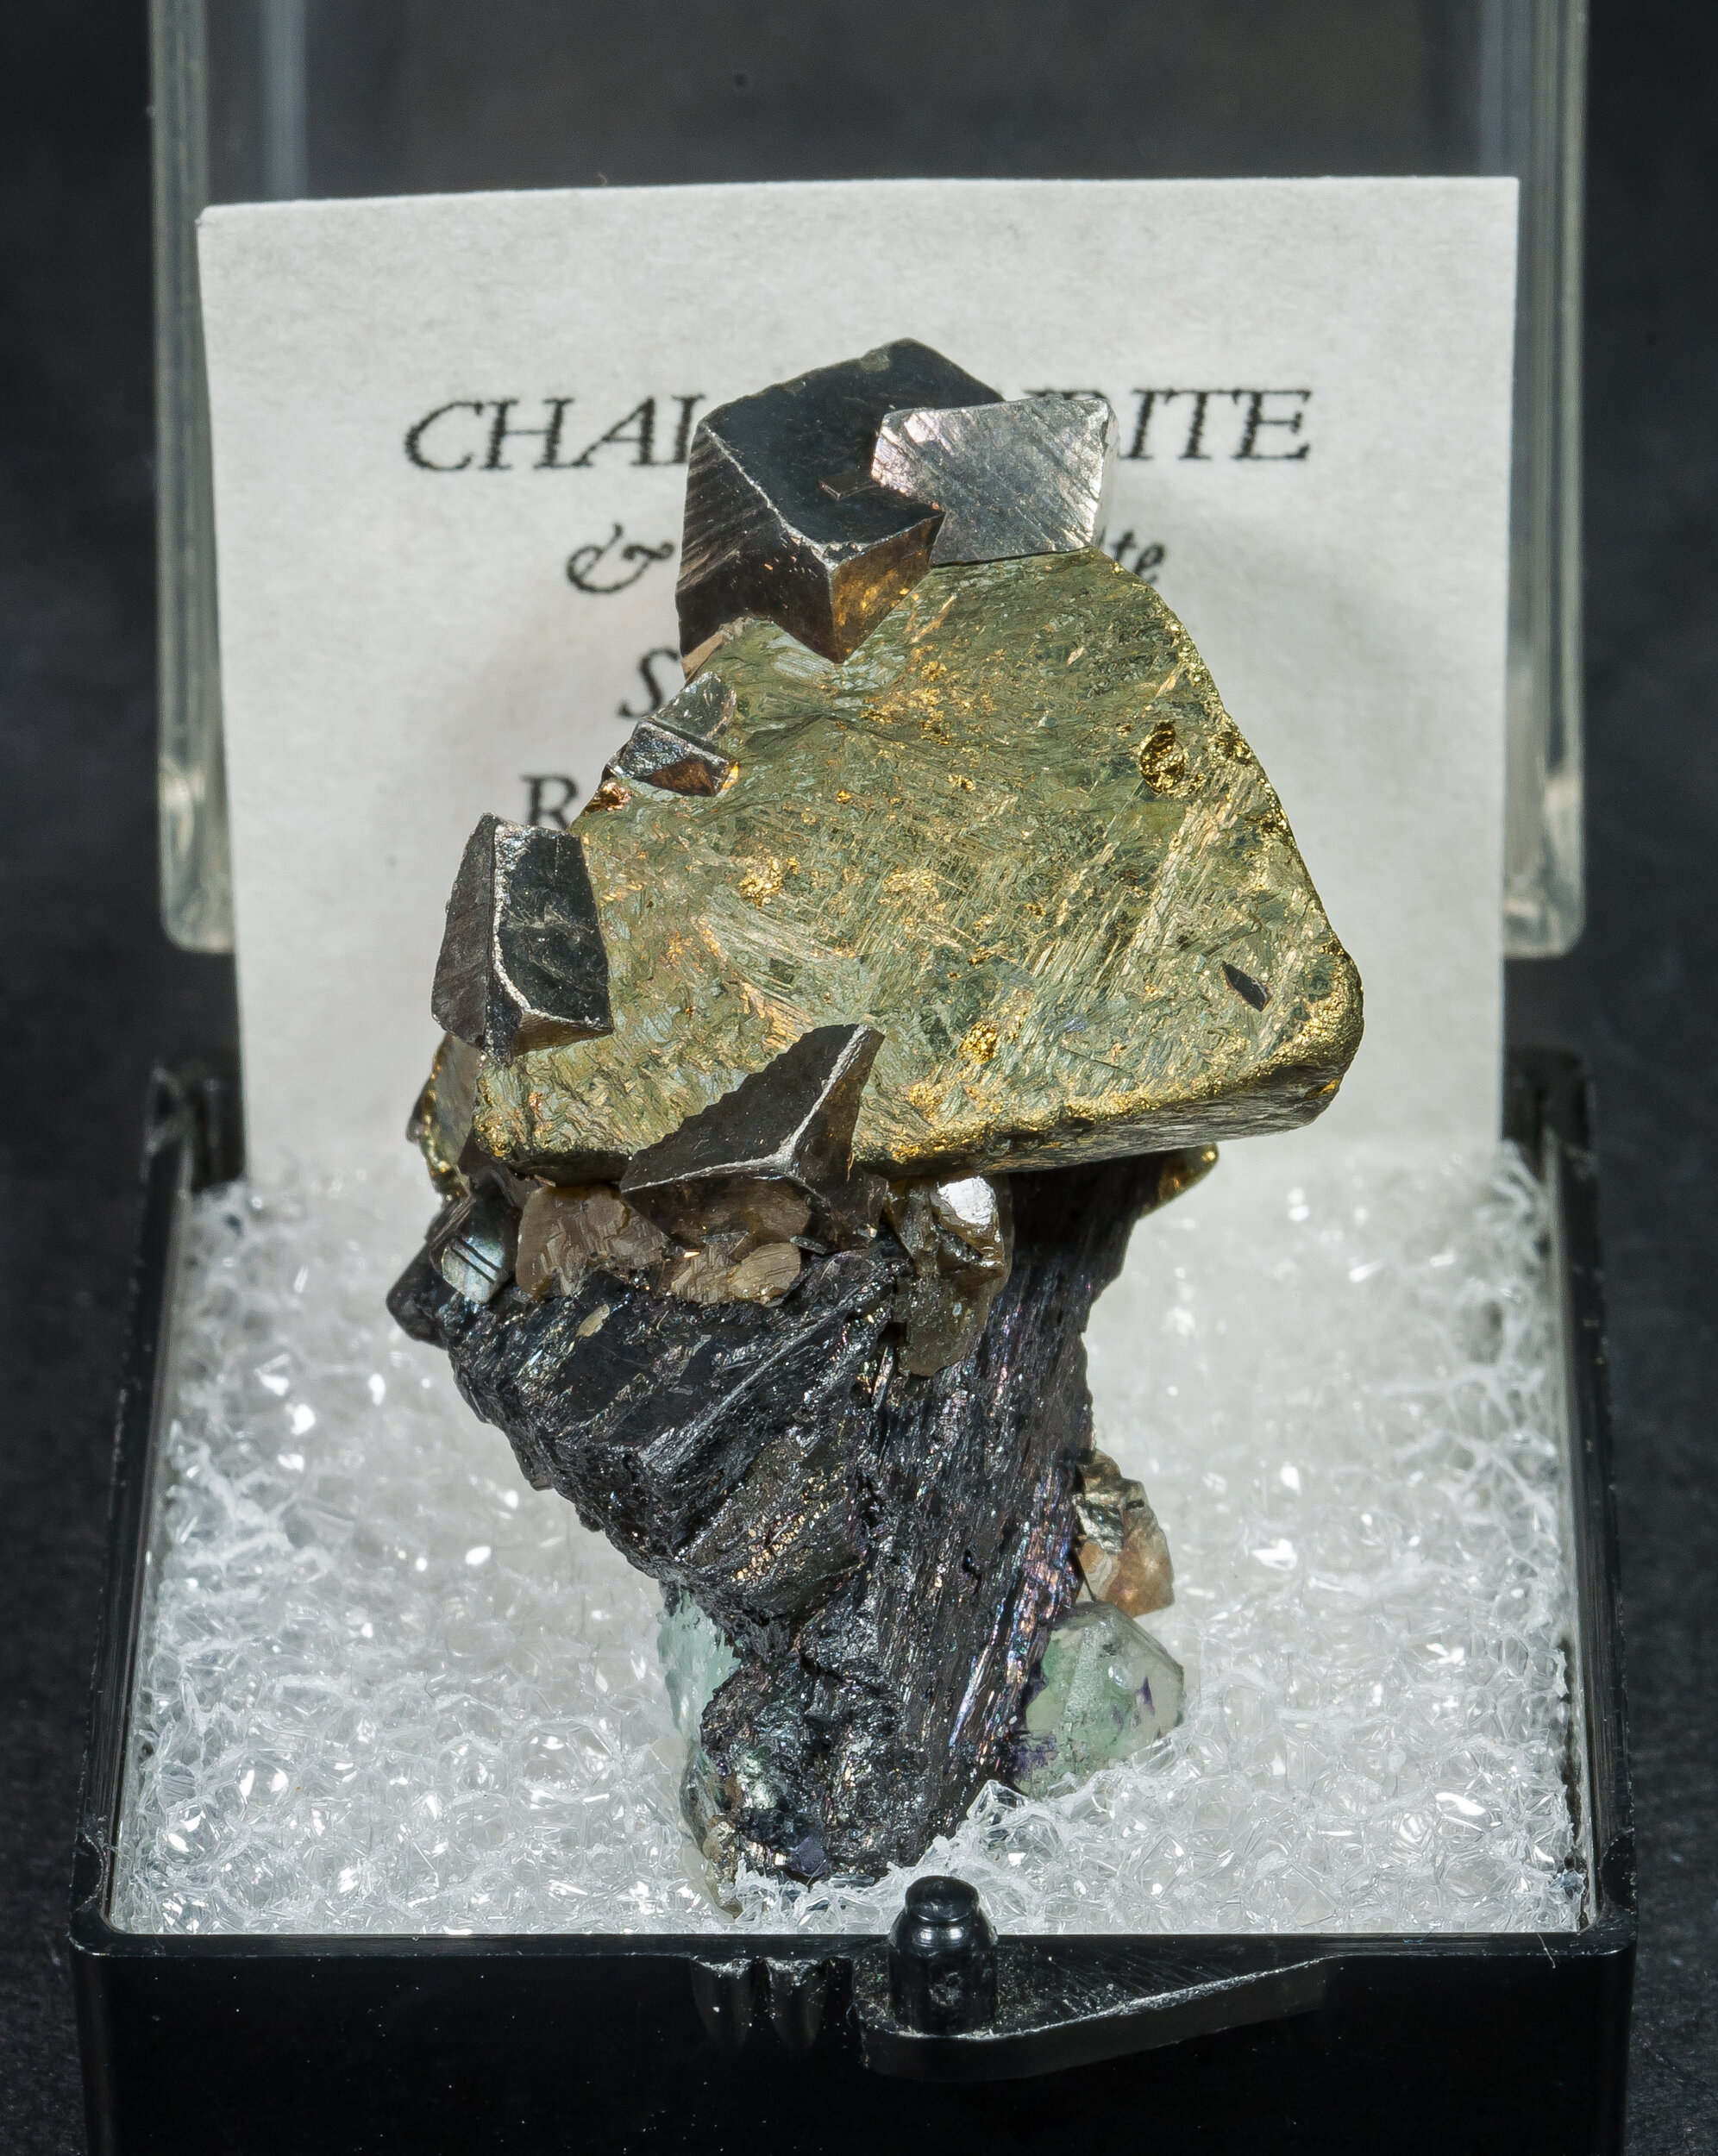 specimens/s_imagesAO1/Chalcopyrite-TAM16AO1f.jpg